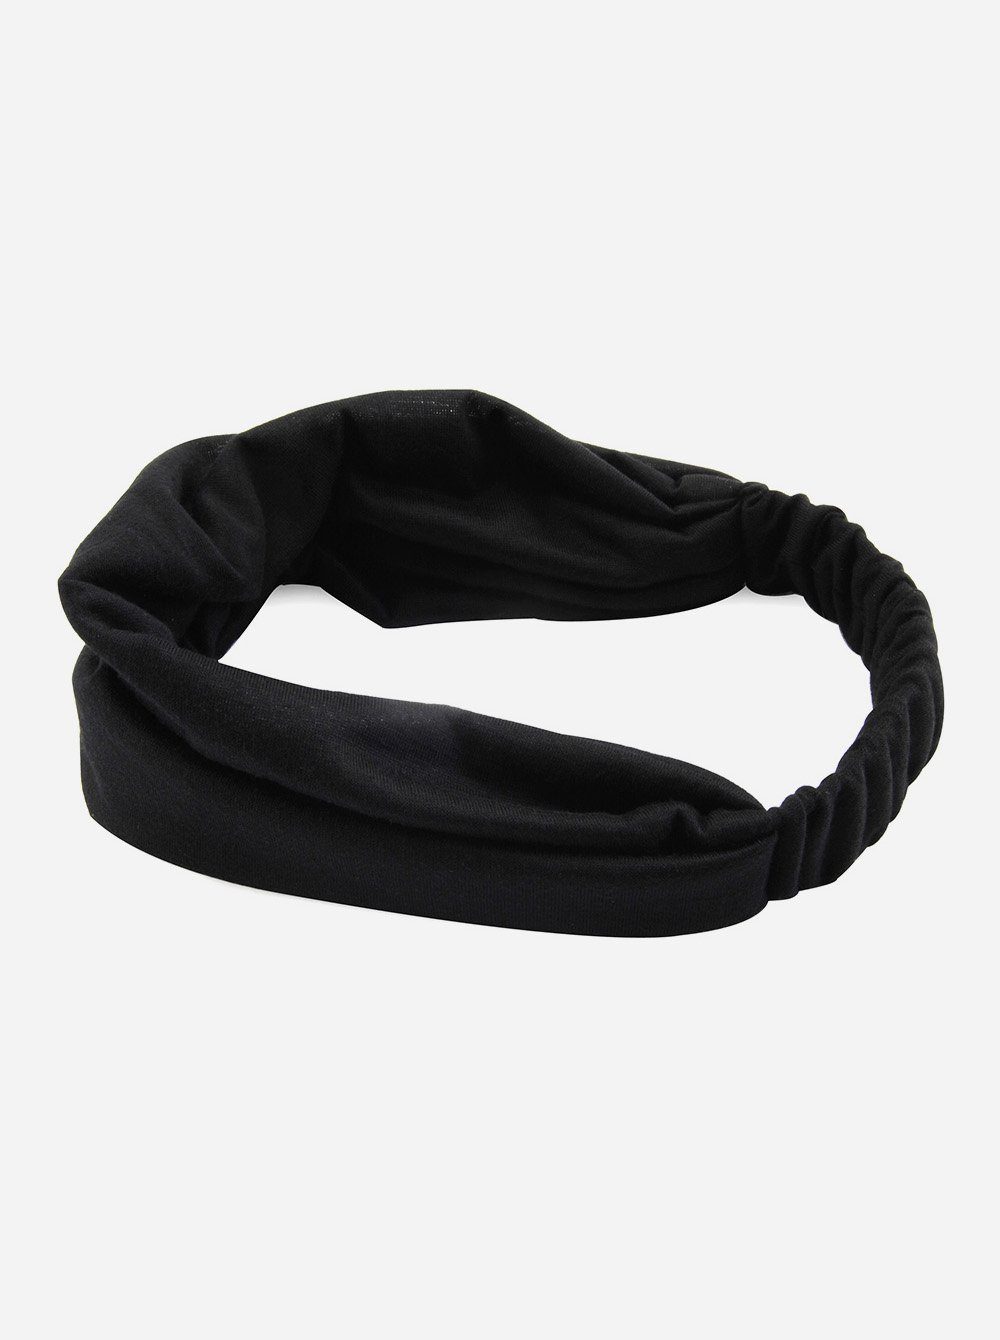 axy Haarband Damen Haarband und Yoga Schwarz Kopfband, für Stirnband Hairband Sport